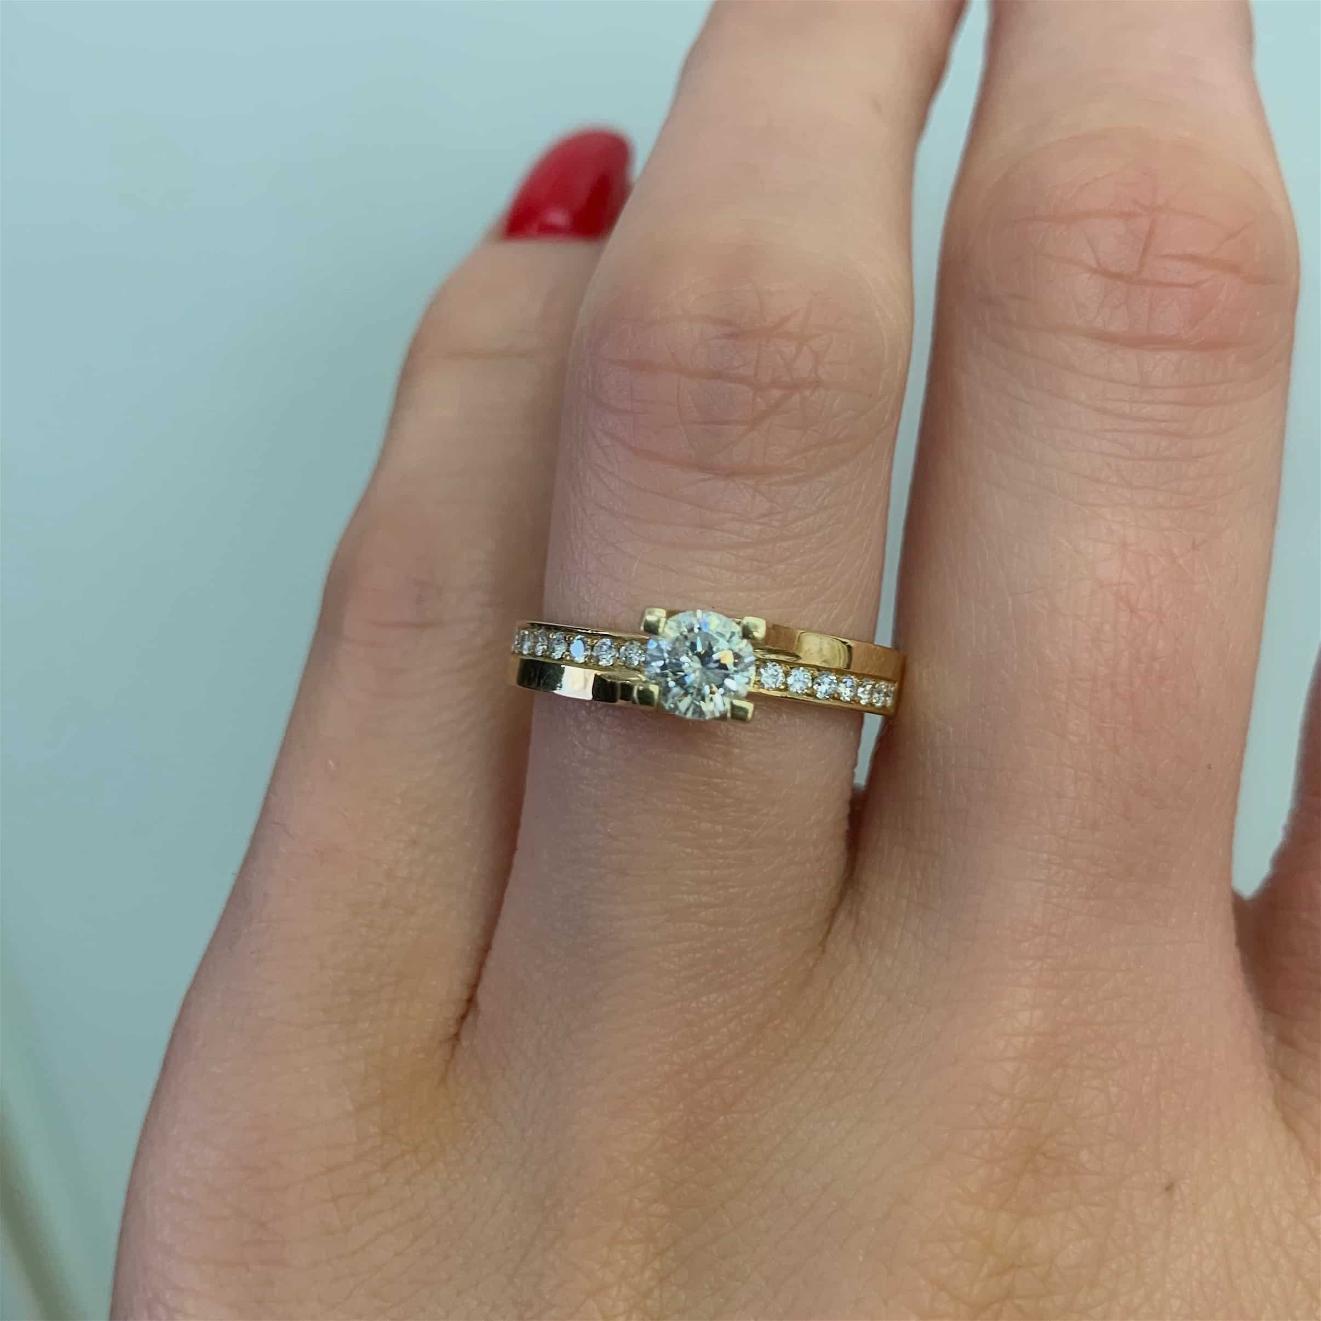 תקריב של יד המציגה את הזהב המבריק טבעת אירוסין דגם ימית ב-38% הנחה טבעת אירוסין עם יהלום מרכזי בולט ויהלומים קטנים נוספים משובצים בלהקה.